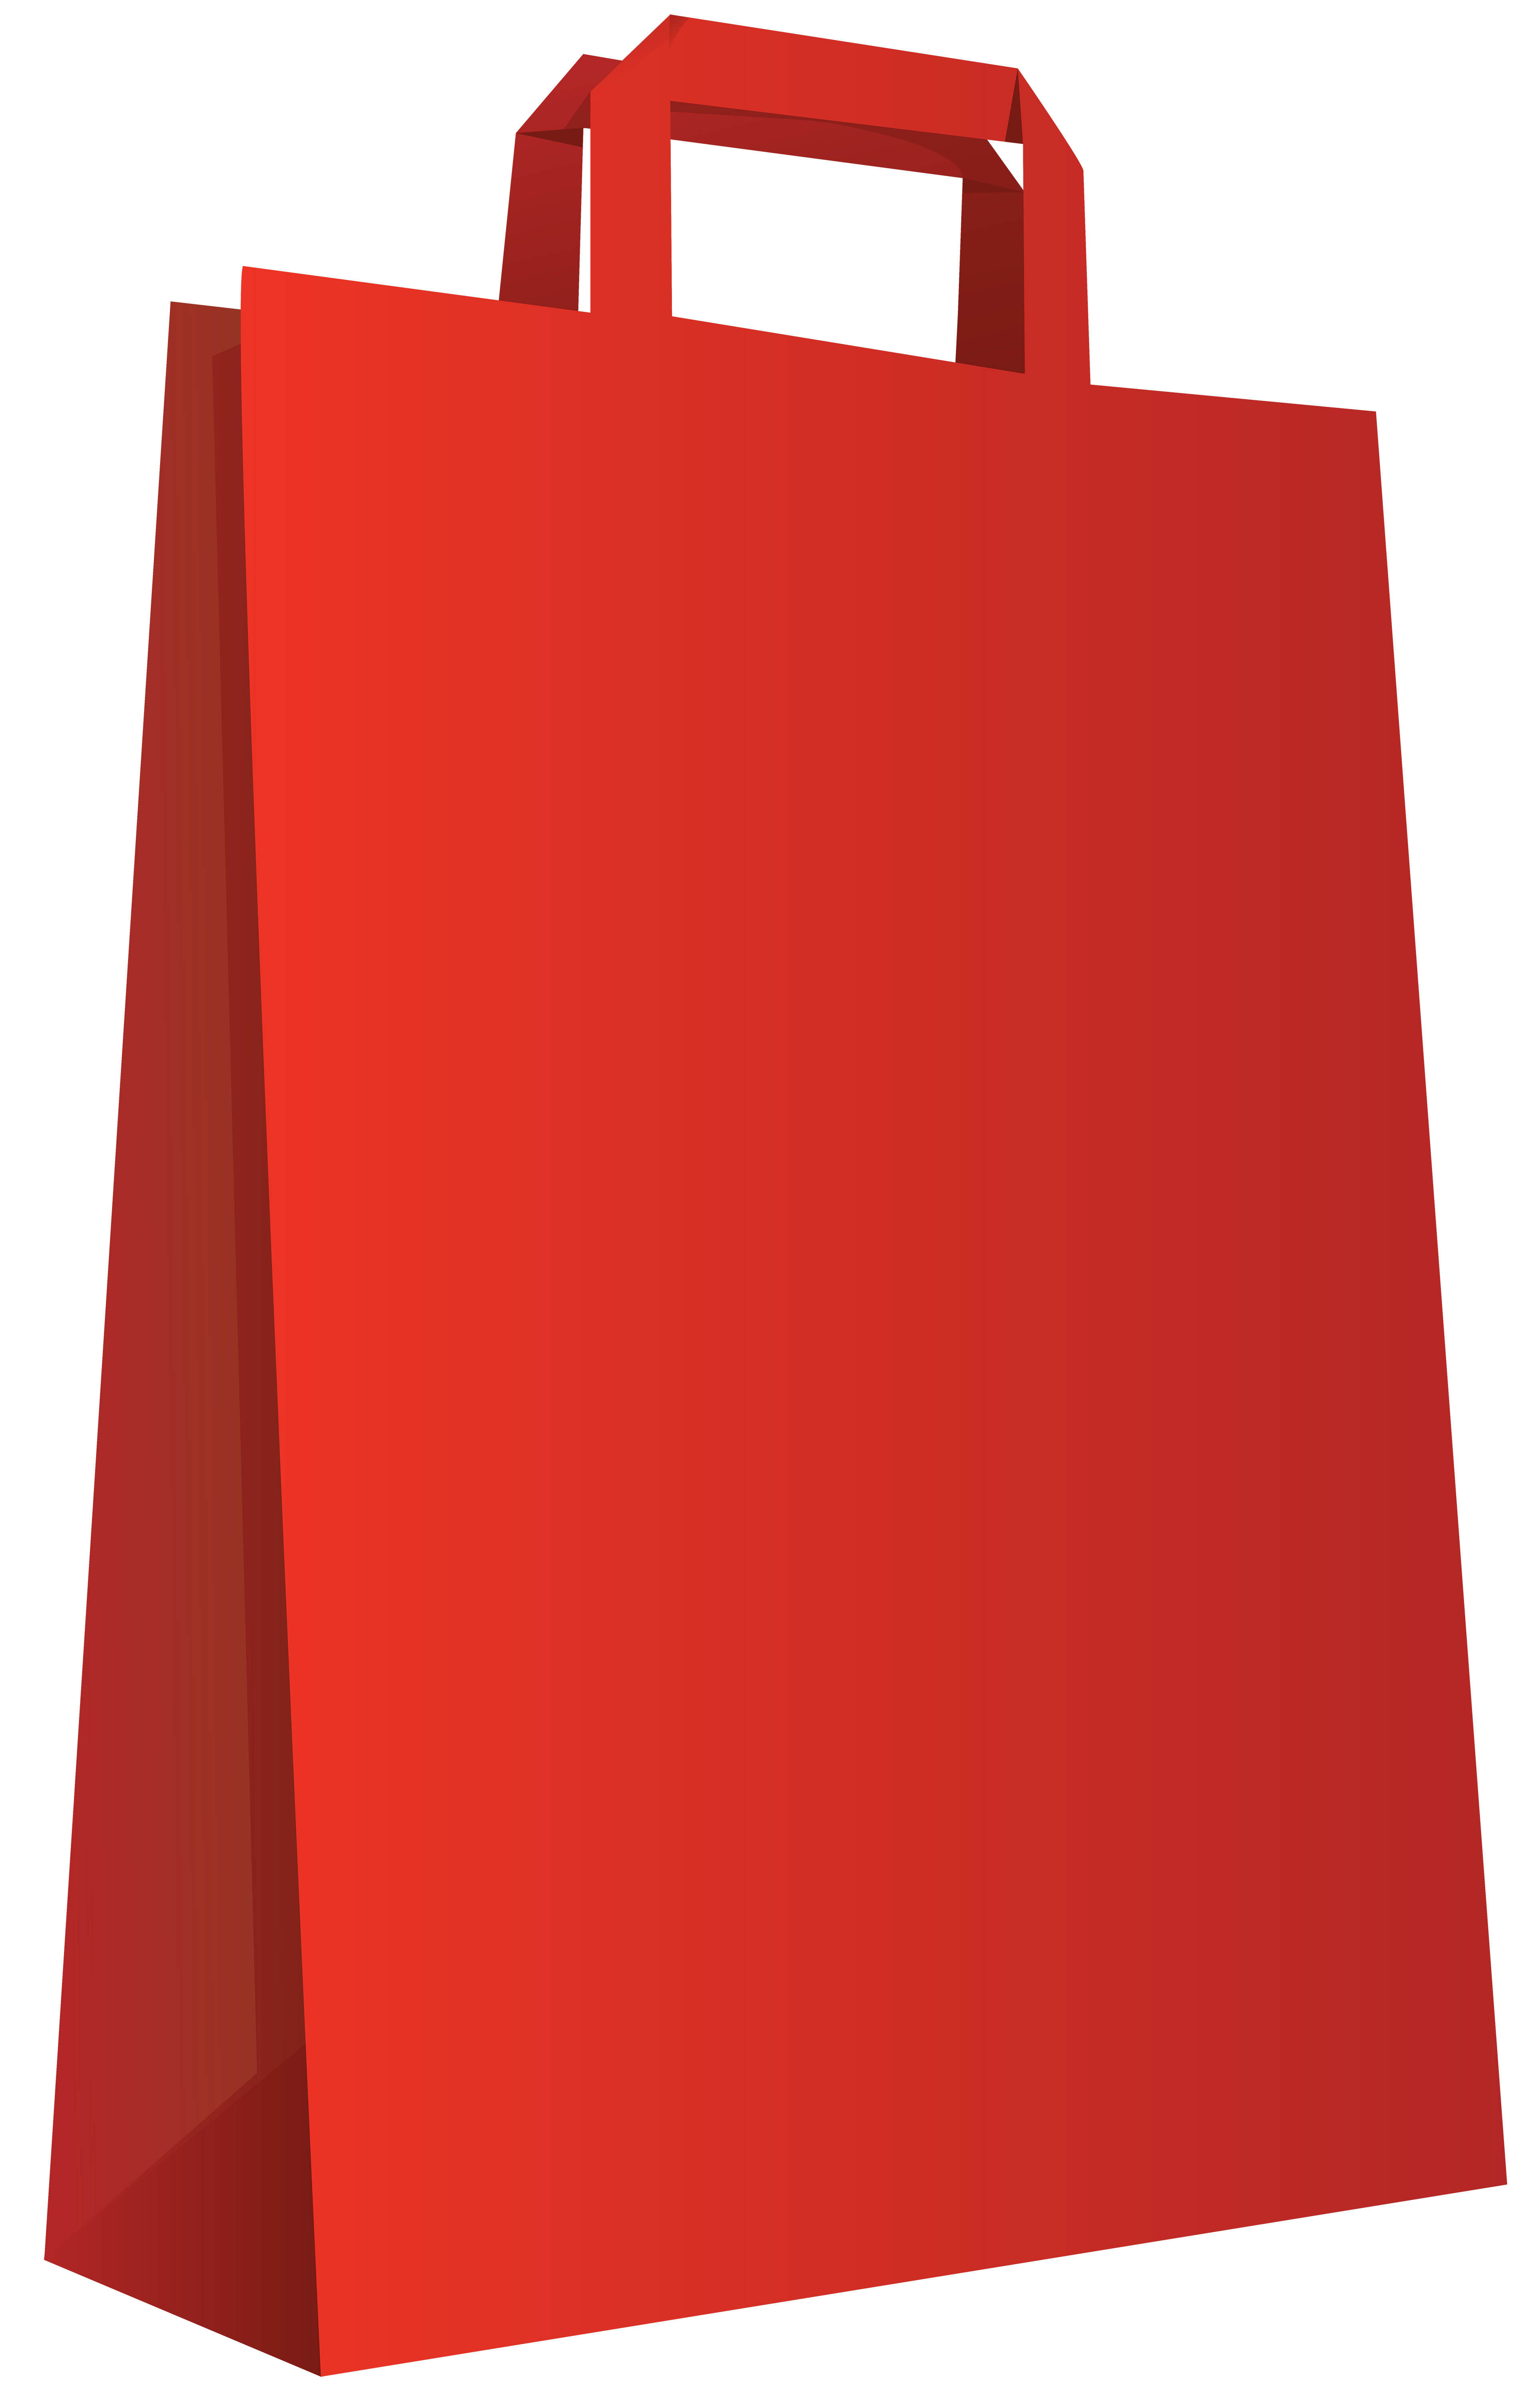 Red Bag Transparent PNG Clip Art Image.